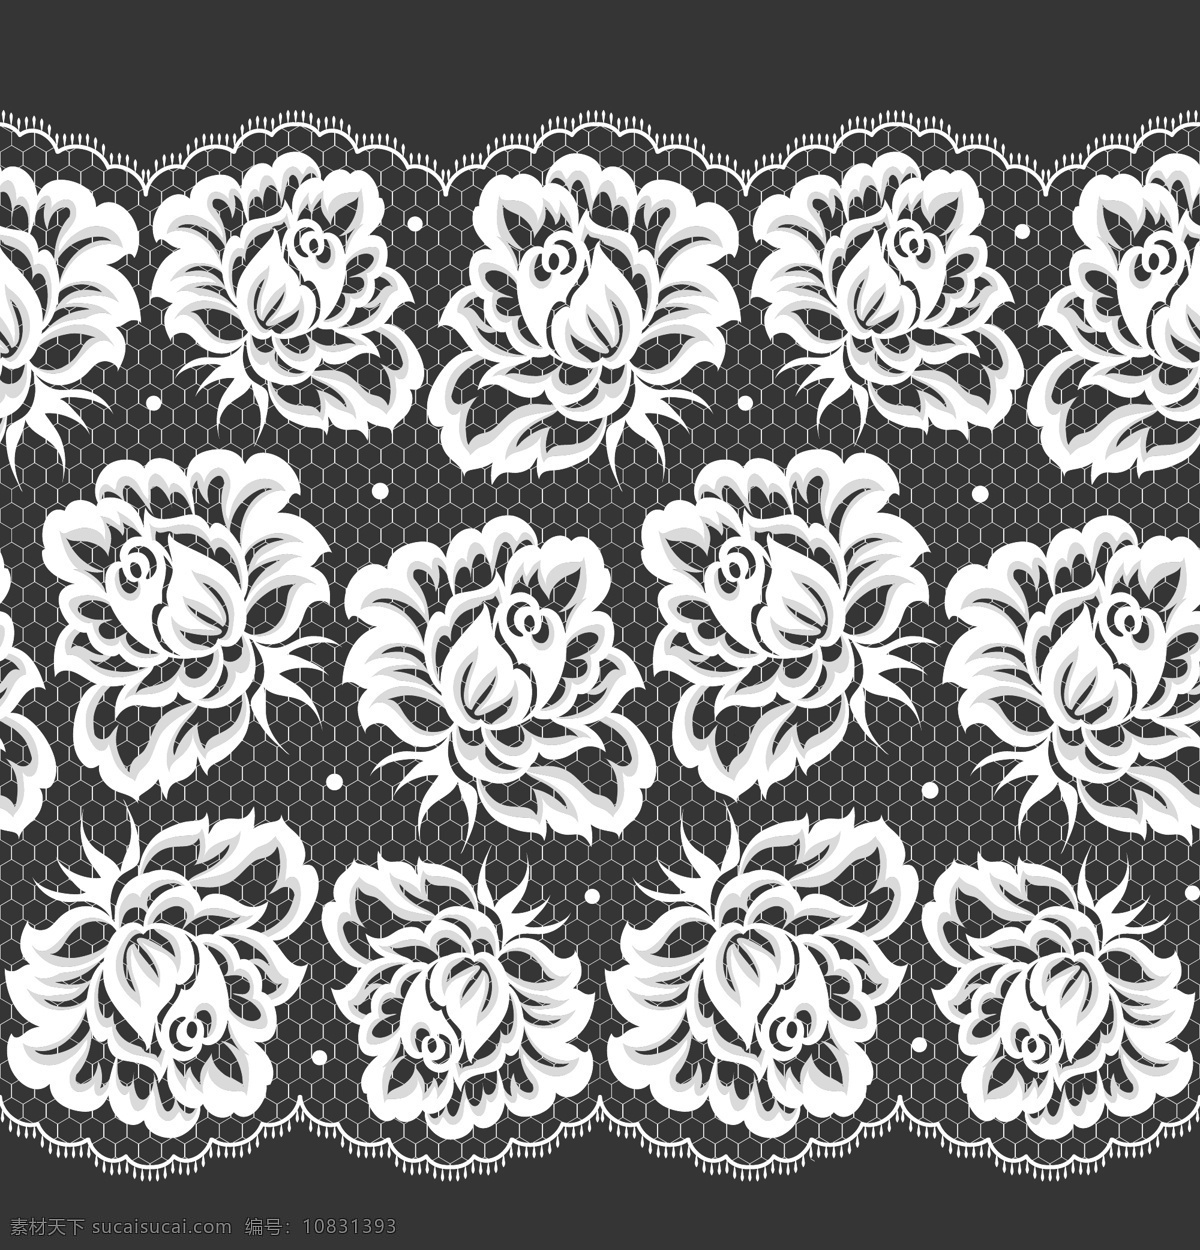 白色 花卉 图案 纹样 矢量 简约 矢量素材 设计素材 背景素材